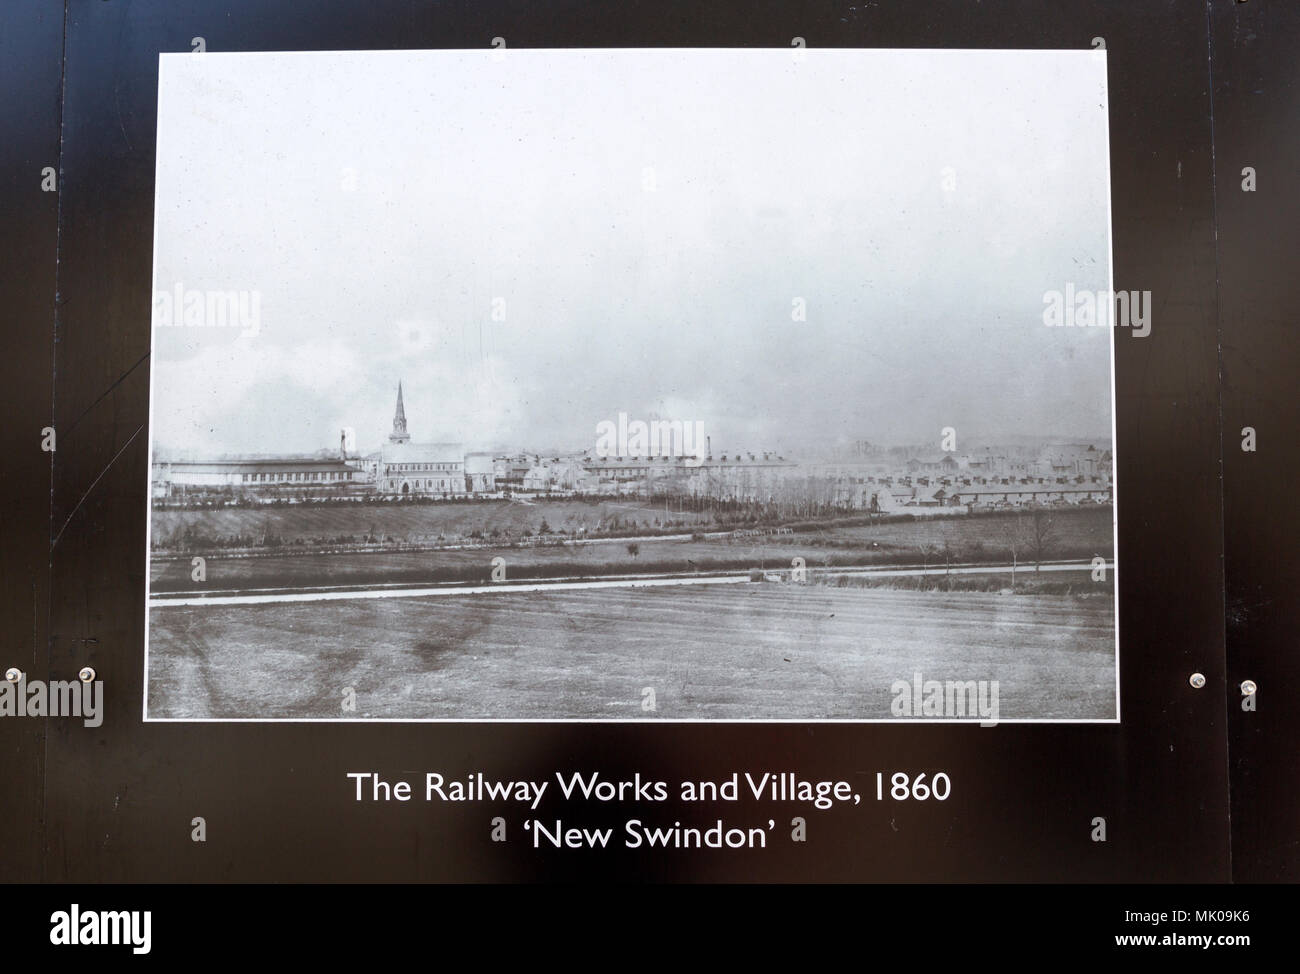 Public display del vecchio e storico immagini sulle opere di GWR, Swindon, Wiltshire, Inghilterra, Regno Unito opere ferroviarie e il borgo nuovo Swindon 1860 Foto Stock